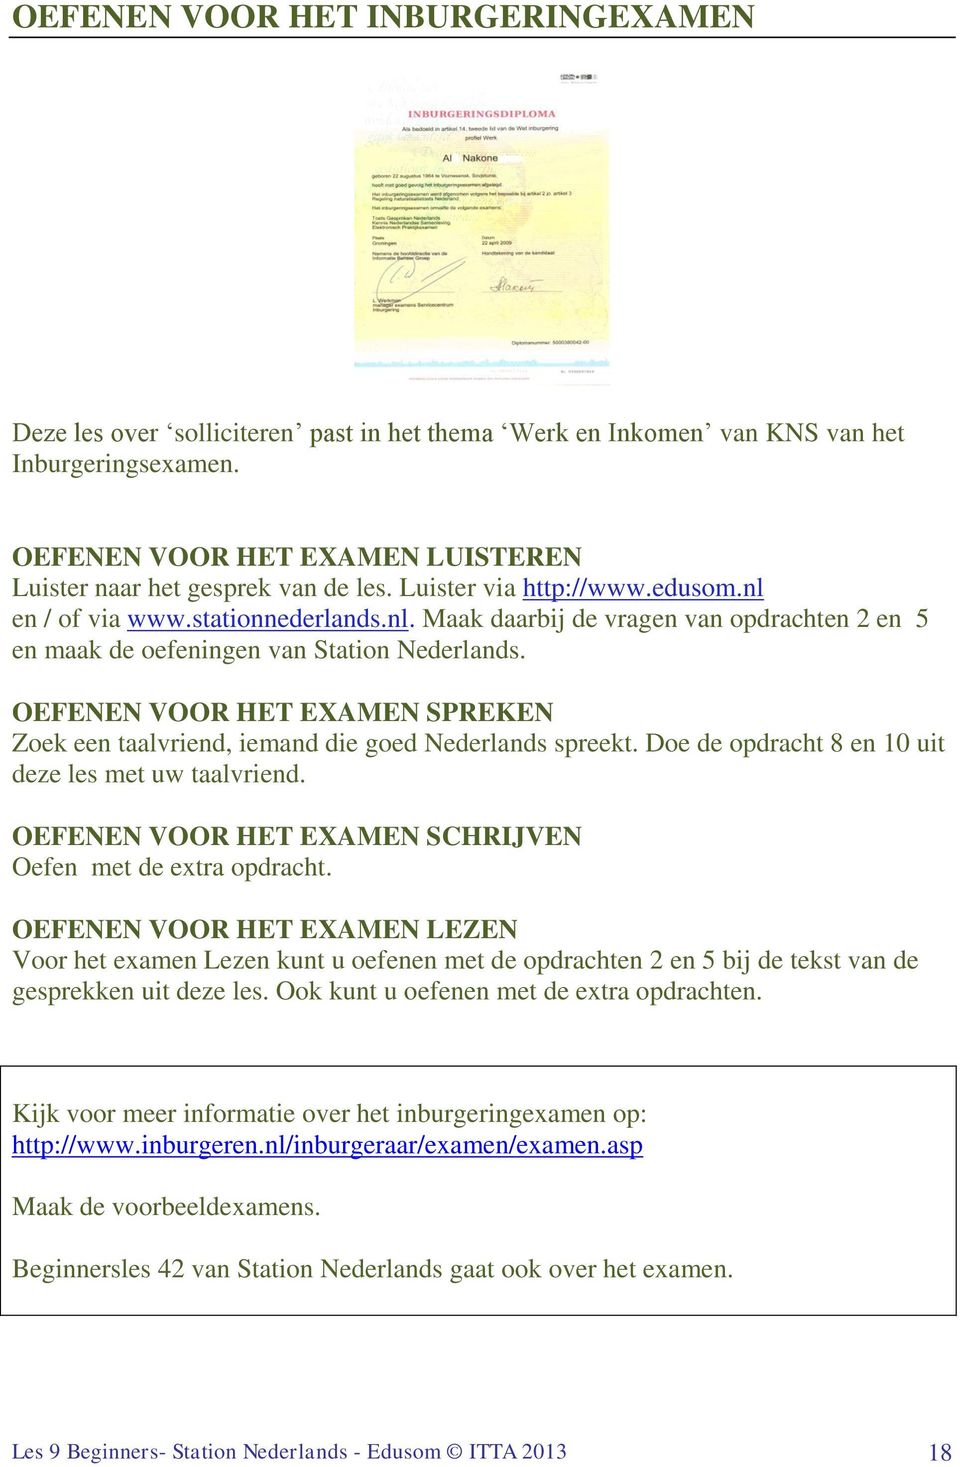 OEFENEN VOOR HET EXMEN SPREKEN Zoek een taalvriend, iemand die goed Nederlands spreekt. Doe de opdracht 8 en 10 uit deze les met uw taalvriend.